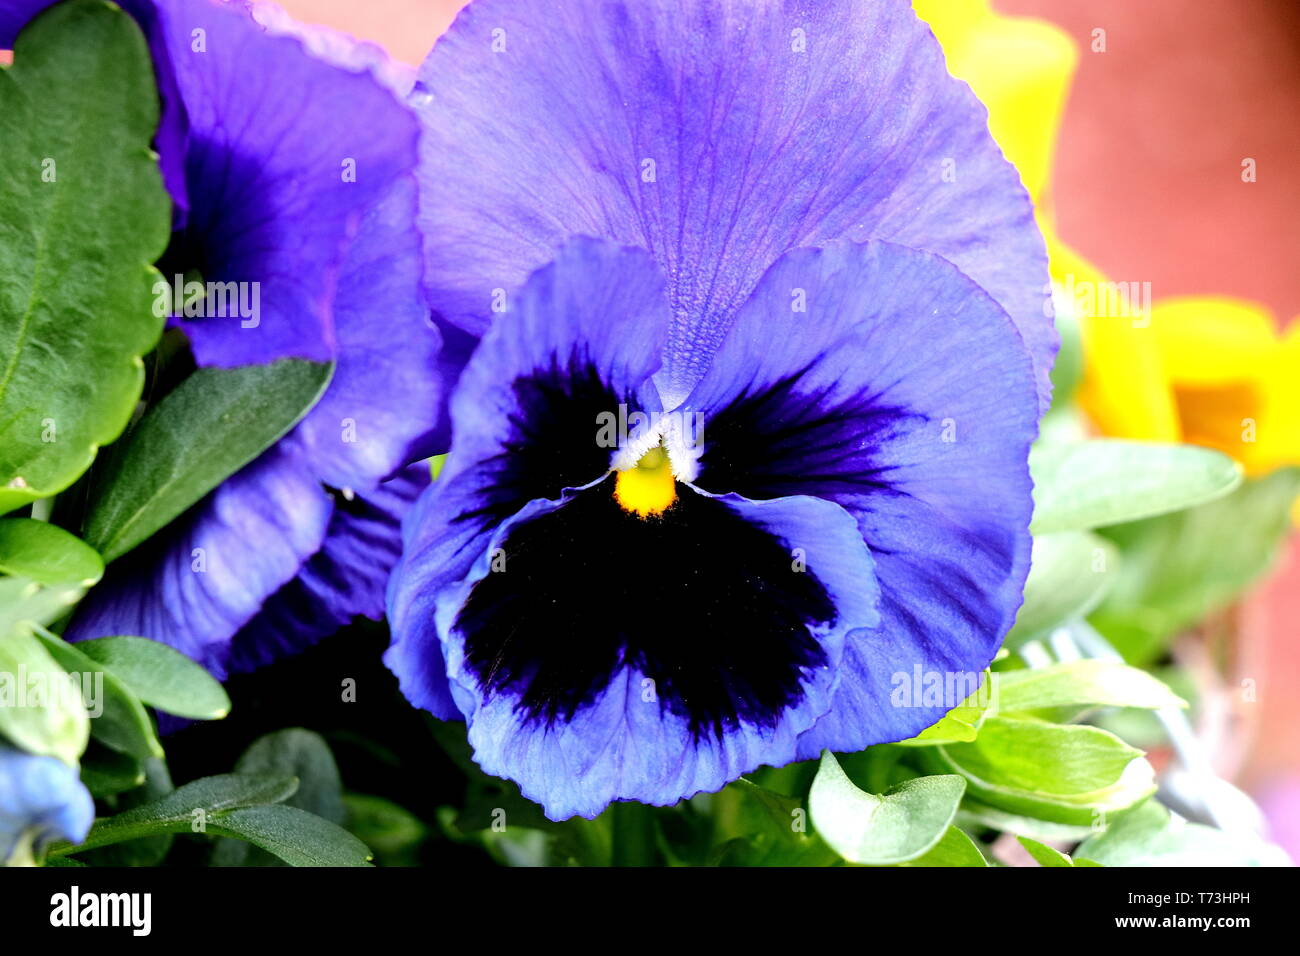 Garten Stiefmütterchen, riesige Stiefmütterchen, Viola, oder hartsease, eine hybride Pflanze als Garden Flower, insbesondere Viola tricolor, eine Wildflower von Europa angebaut Stockfoto